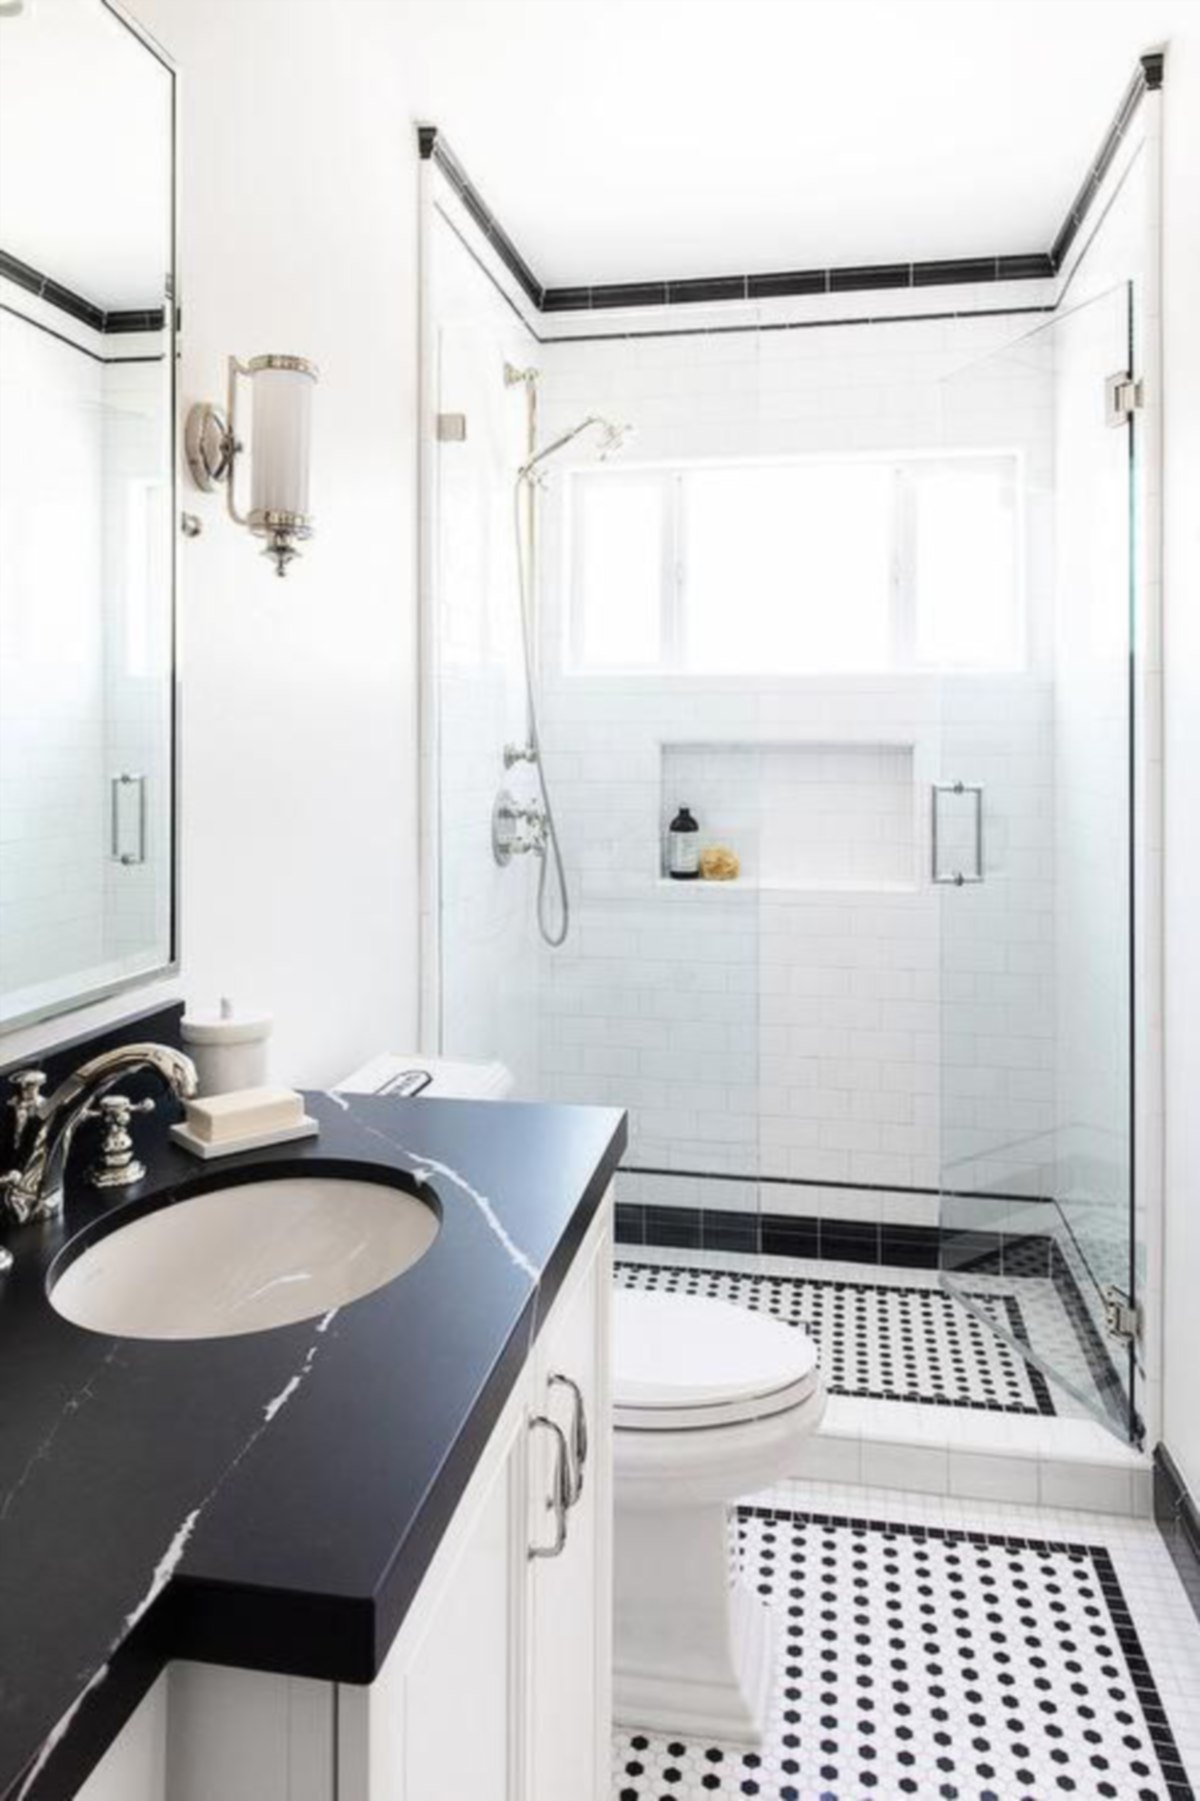 BAGI yang ingin menyerlahkan gaya bilik air mewah, pilihlah dekorasi yang bertemakan retro dan klasik. 